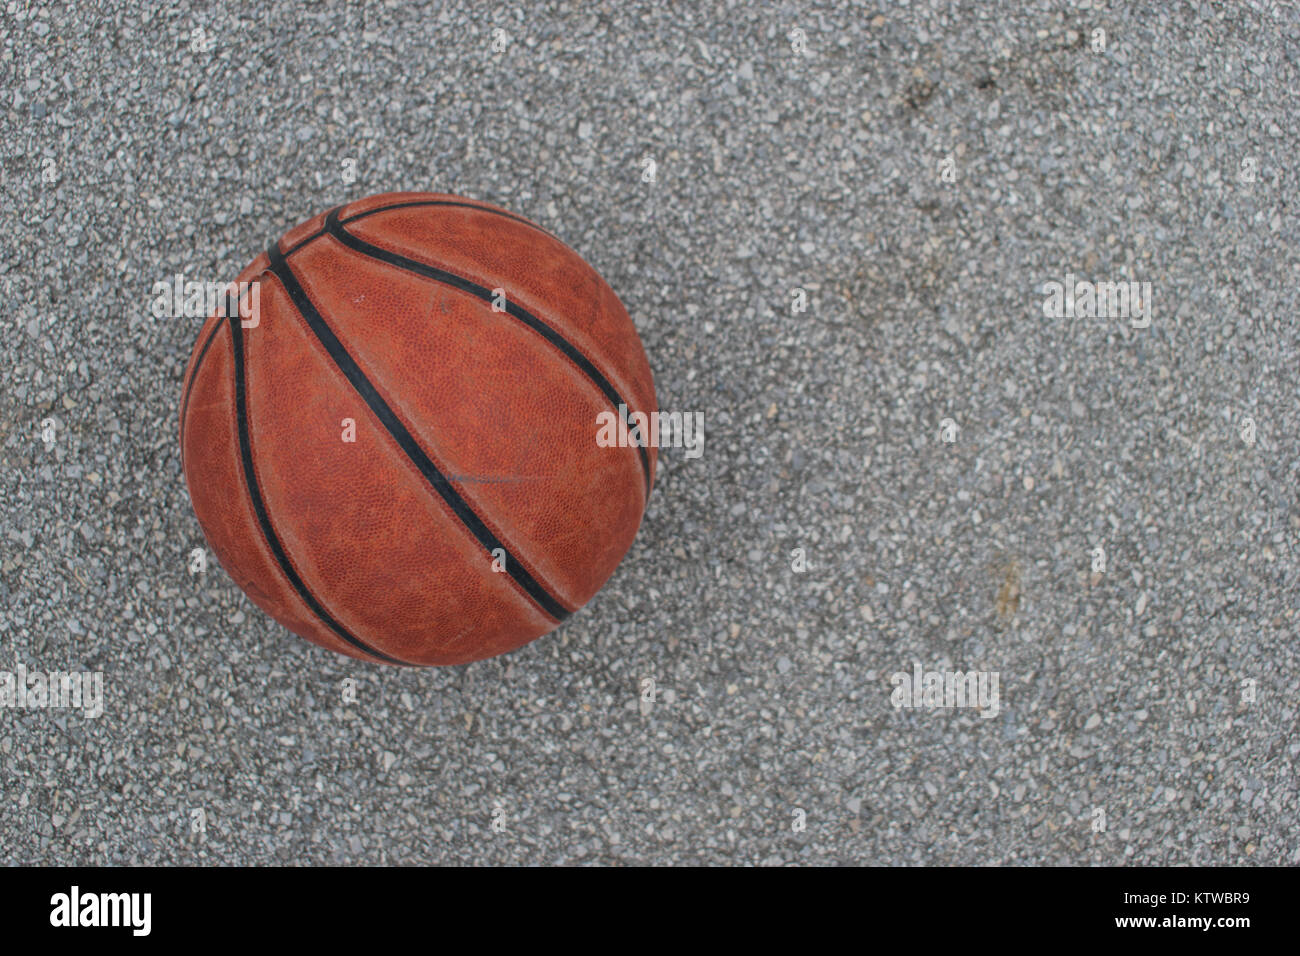 Verwendet orange Leder Basketball auf grauem Asphalt Hintergrund. Stockfoto